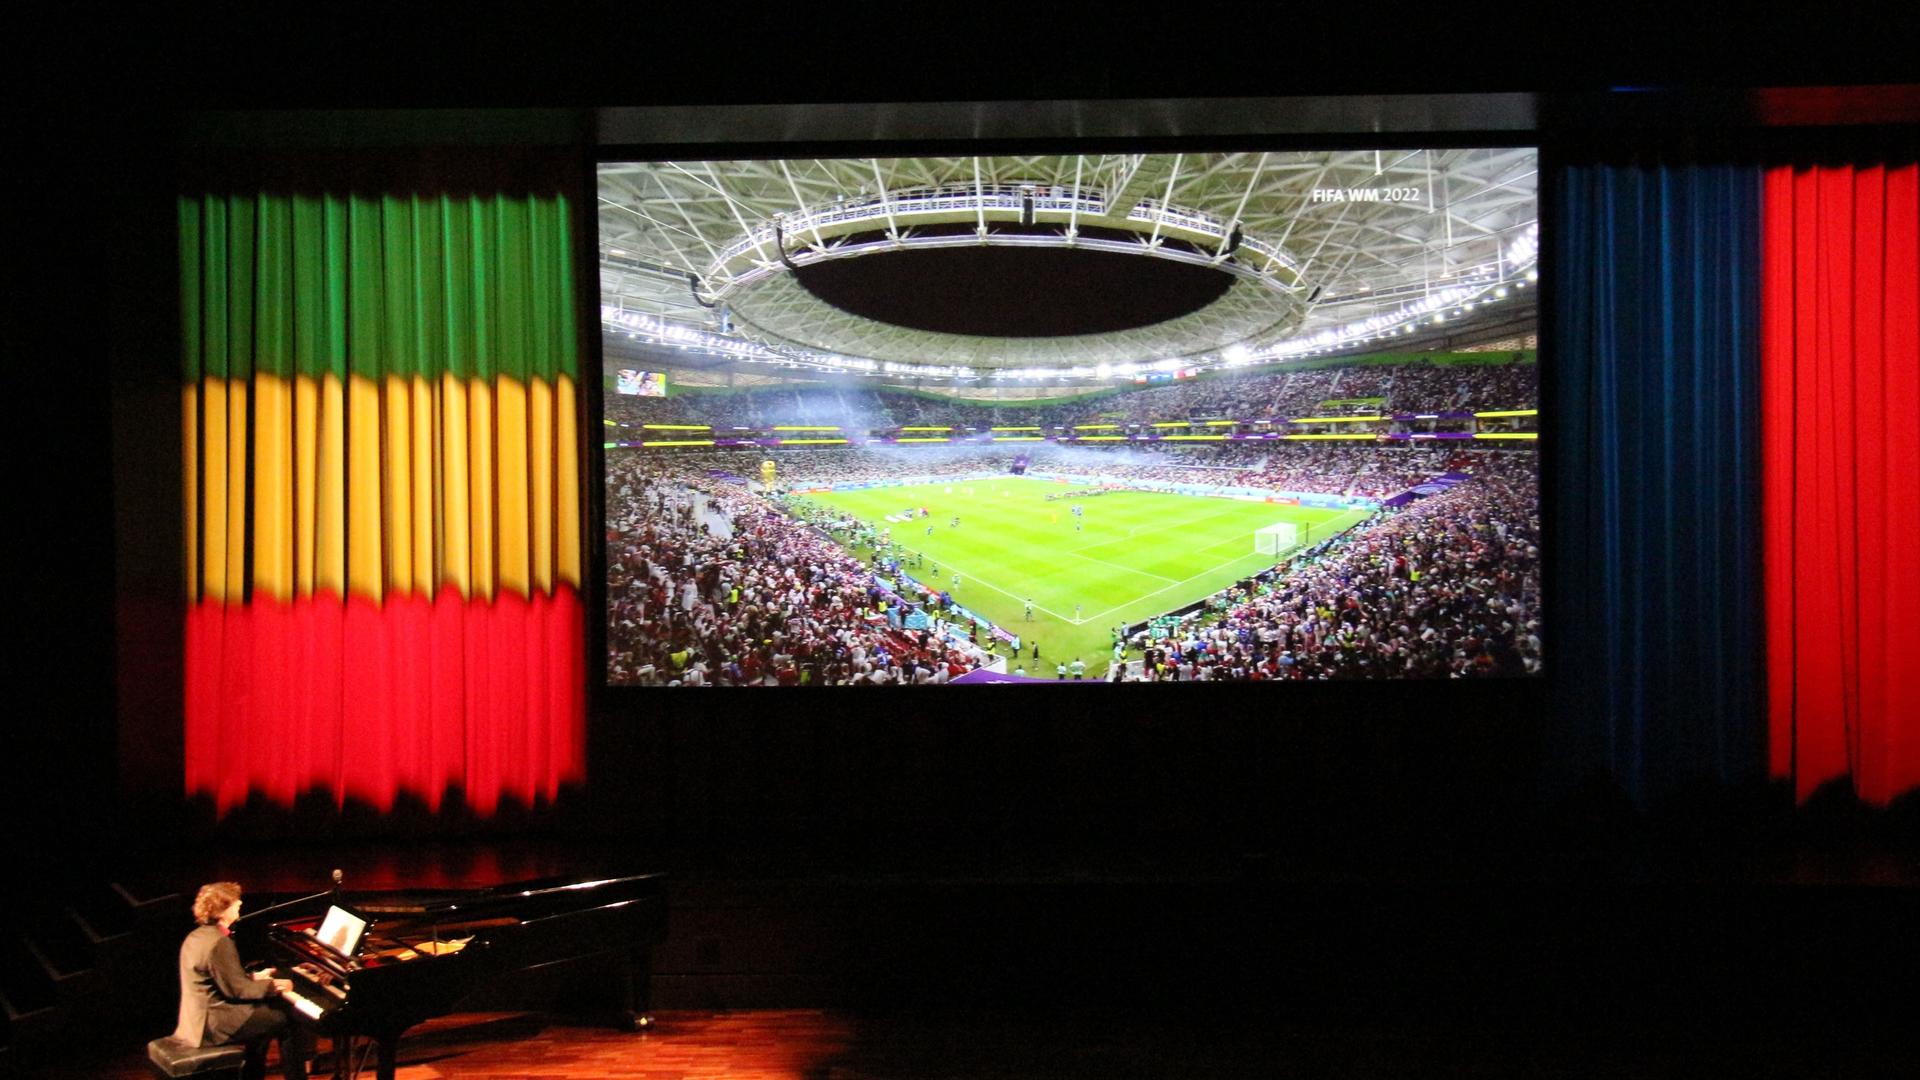 Stummfilmkomponist Stephan Graf von Bothmer bei einem Spiel der Fußball-Weltmeisterschaft 2022